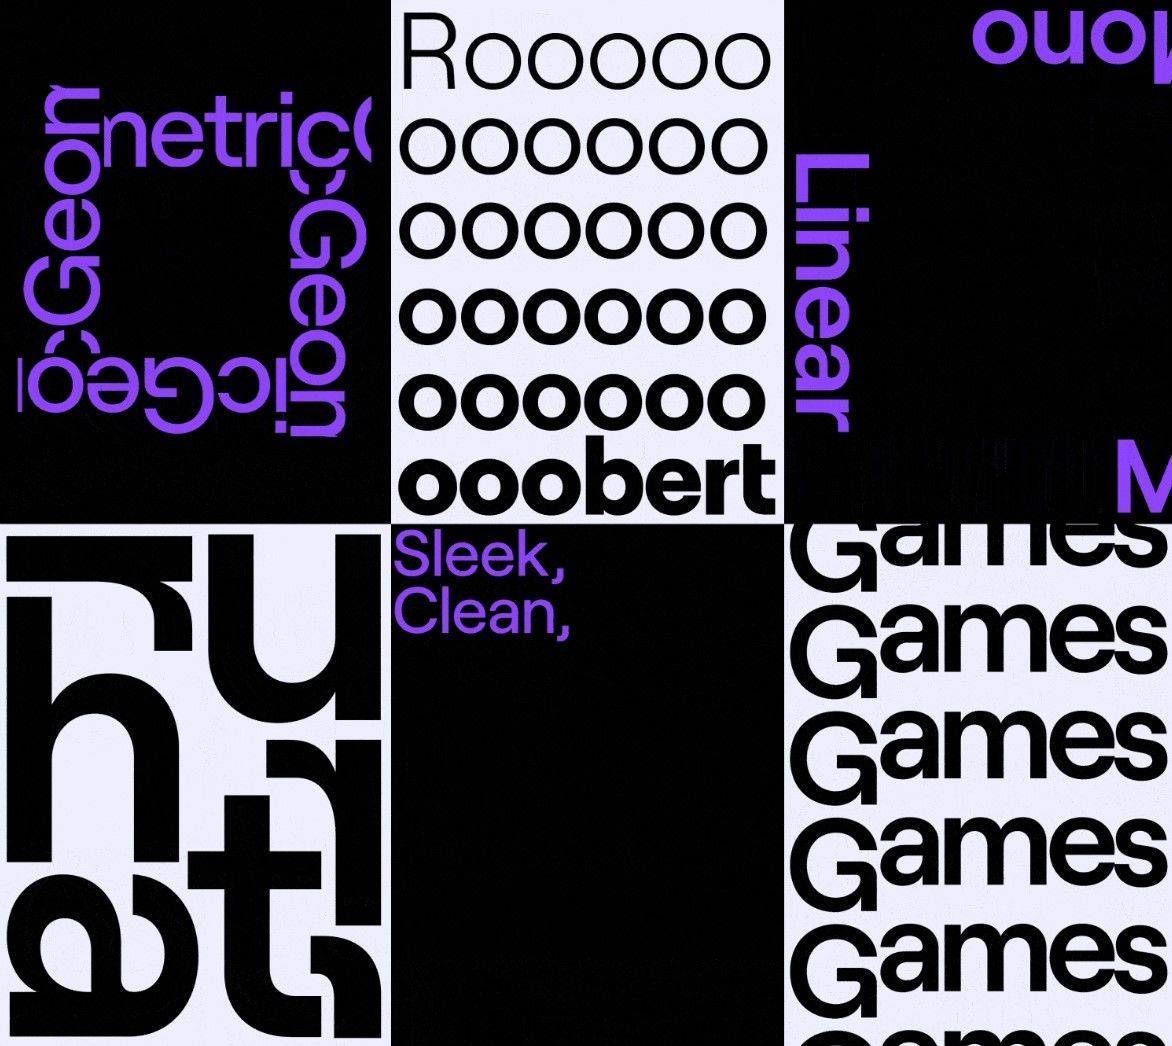 Die neue Schriftart Roobert - inspiriert von der Retro-Synthesizer-Schriftart Moog -  ersetzt die alte Schriftart auf Twitch.